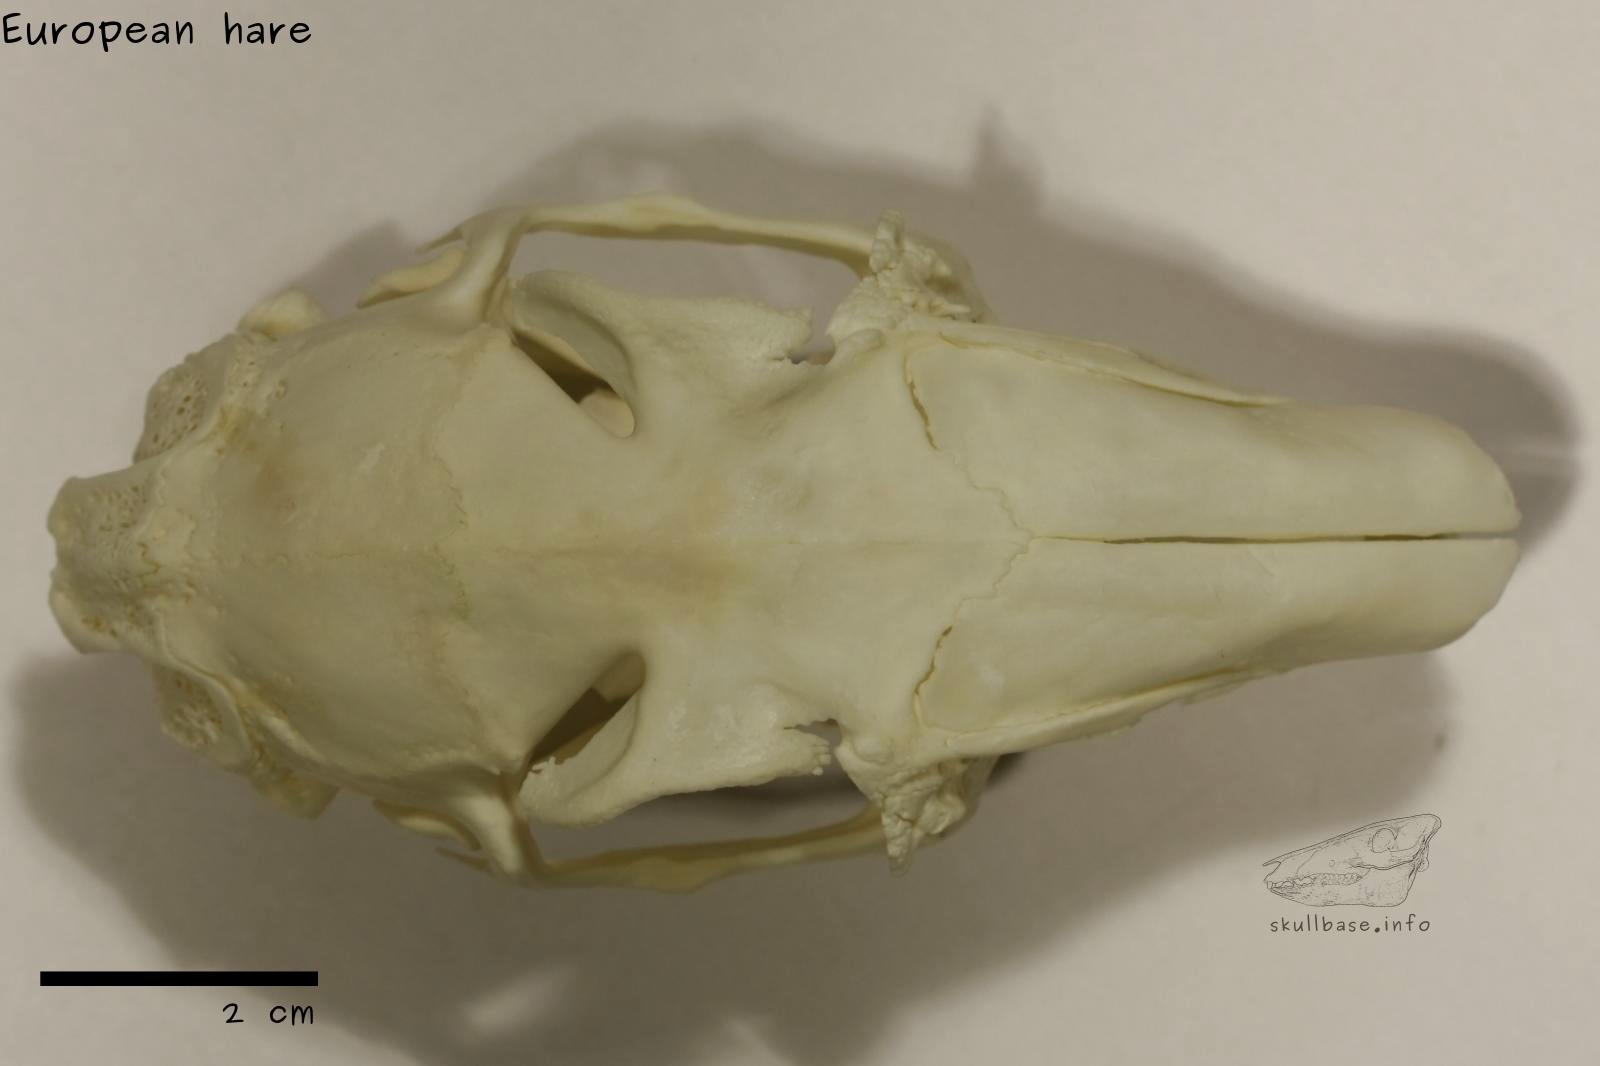 European hare (Lepus europaeus) skull dorsal view